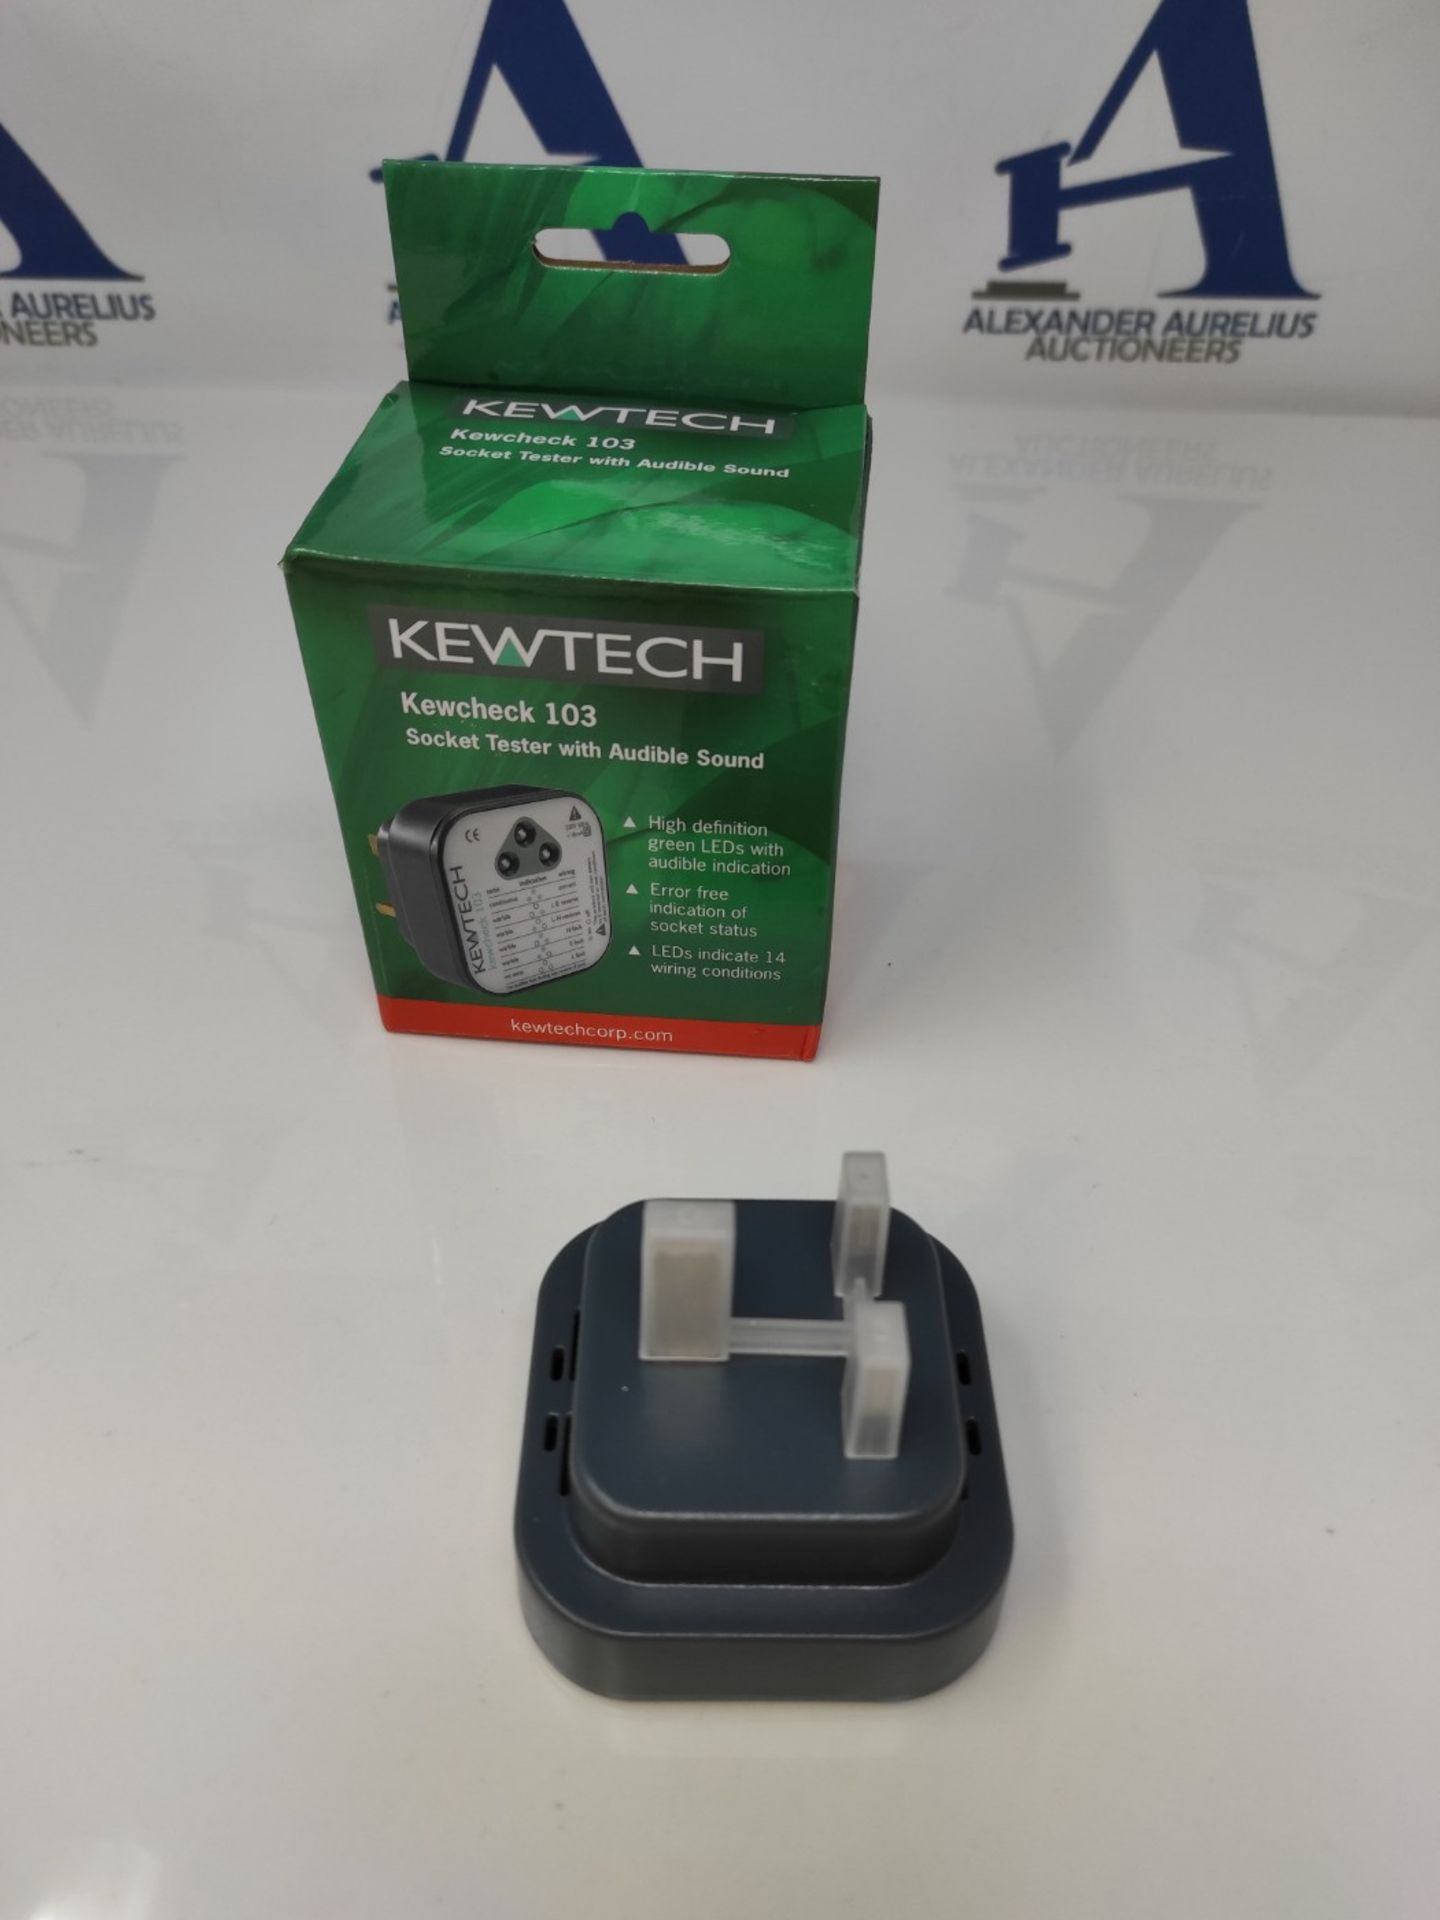 Kewtech KEWCHECK103 Mains Wiring Socket Tester - Image 3 of 3